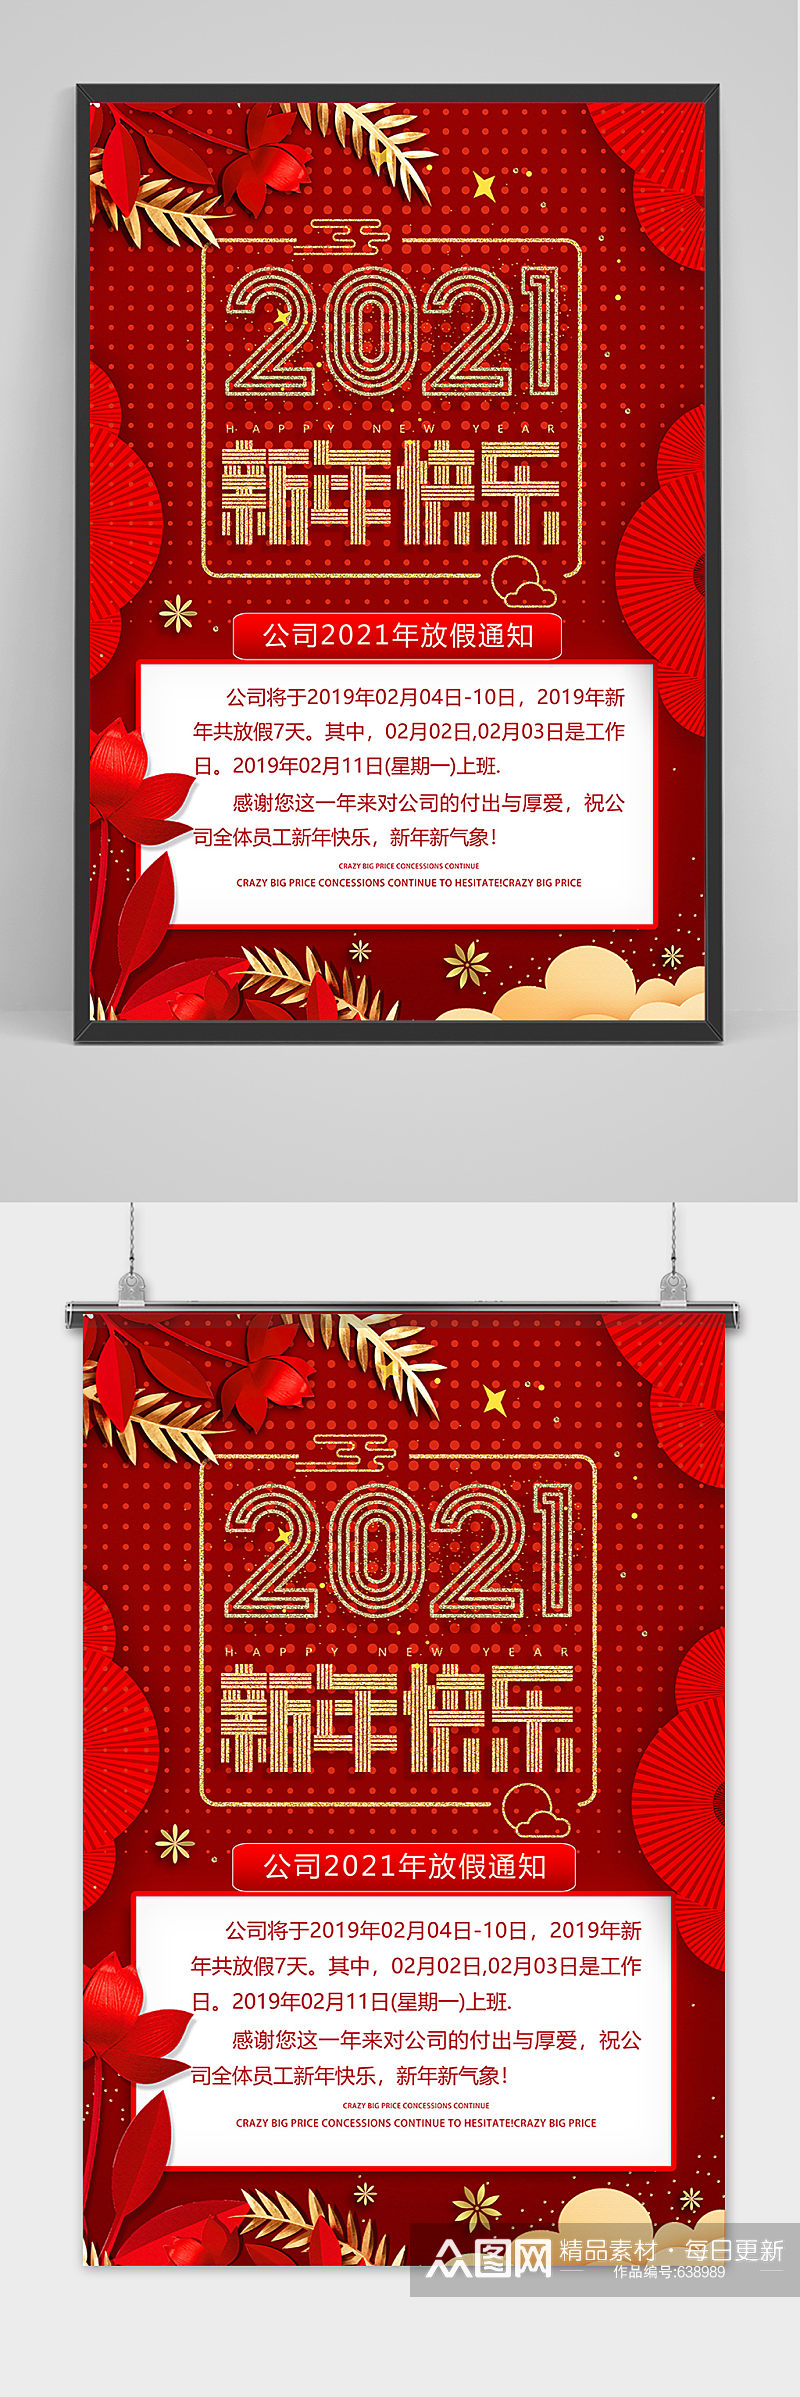 2021新年快乐公司放假通知宣传海报素材